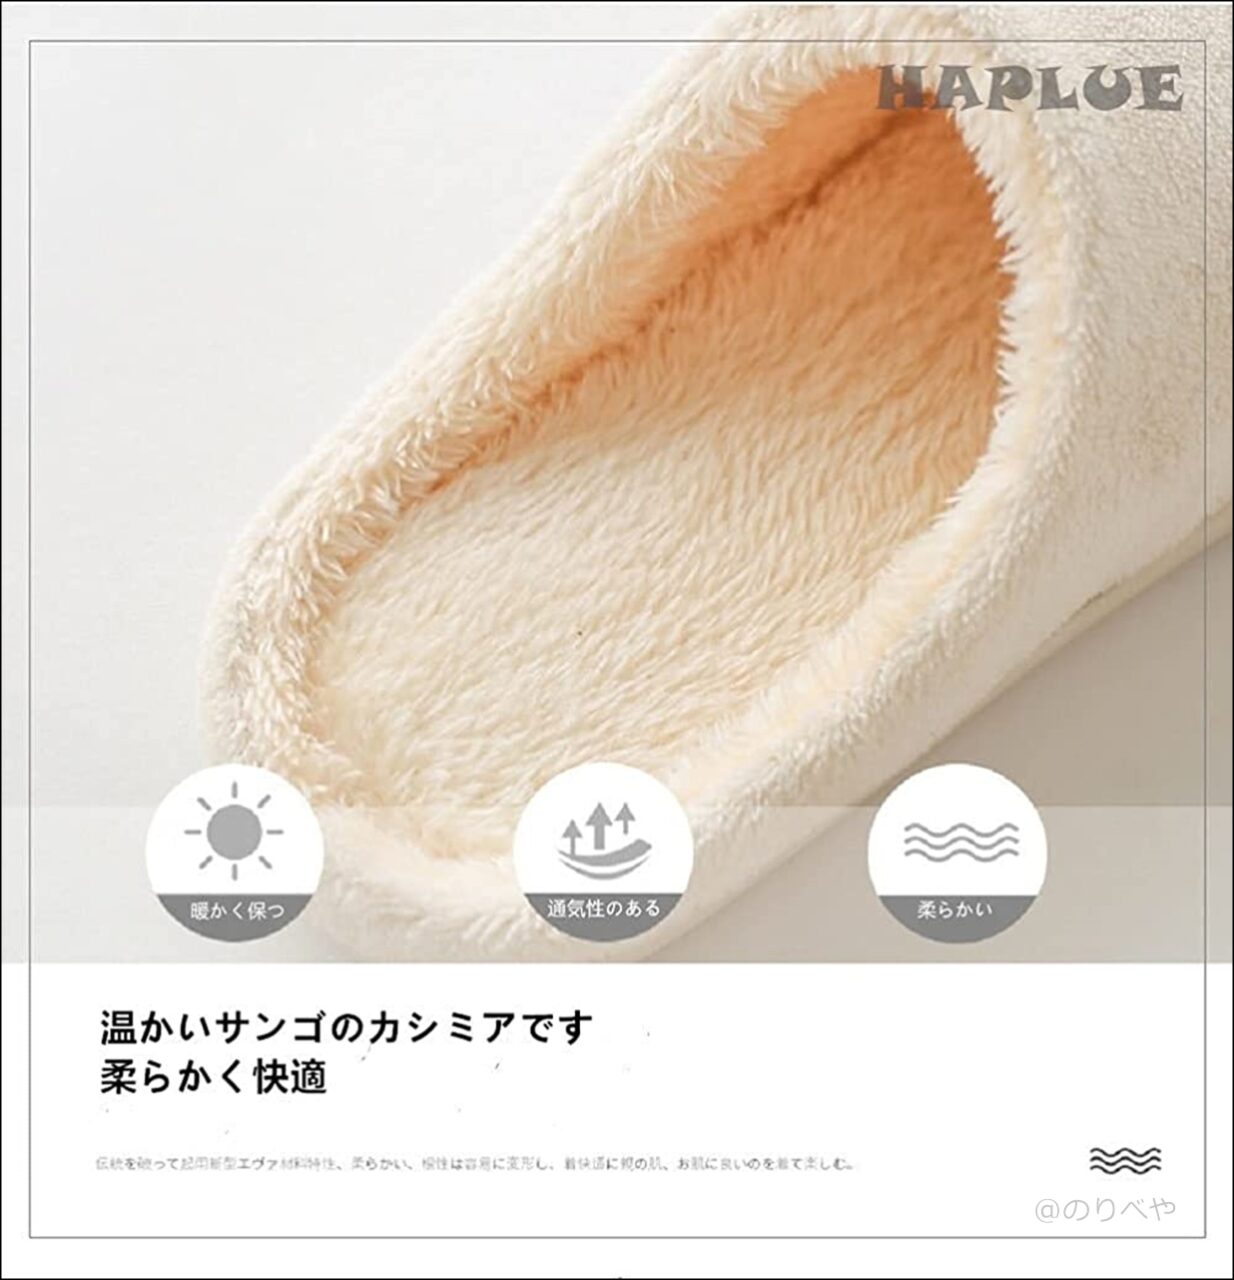 【Amazon】[HAPLUE] スリッパ 室内履き ルームシューズ 暖かい 滑らない 歩きやすい 抗菌衛生 洗濯可